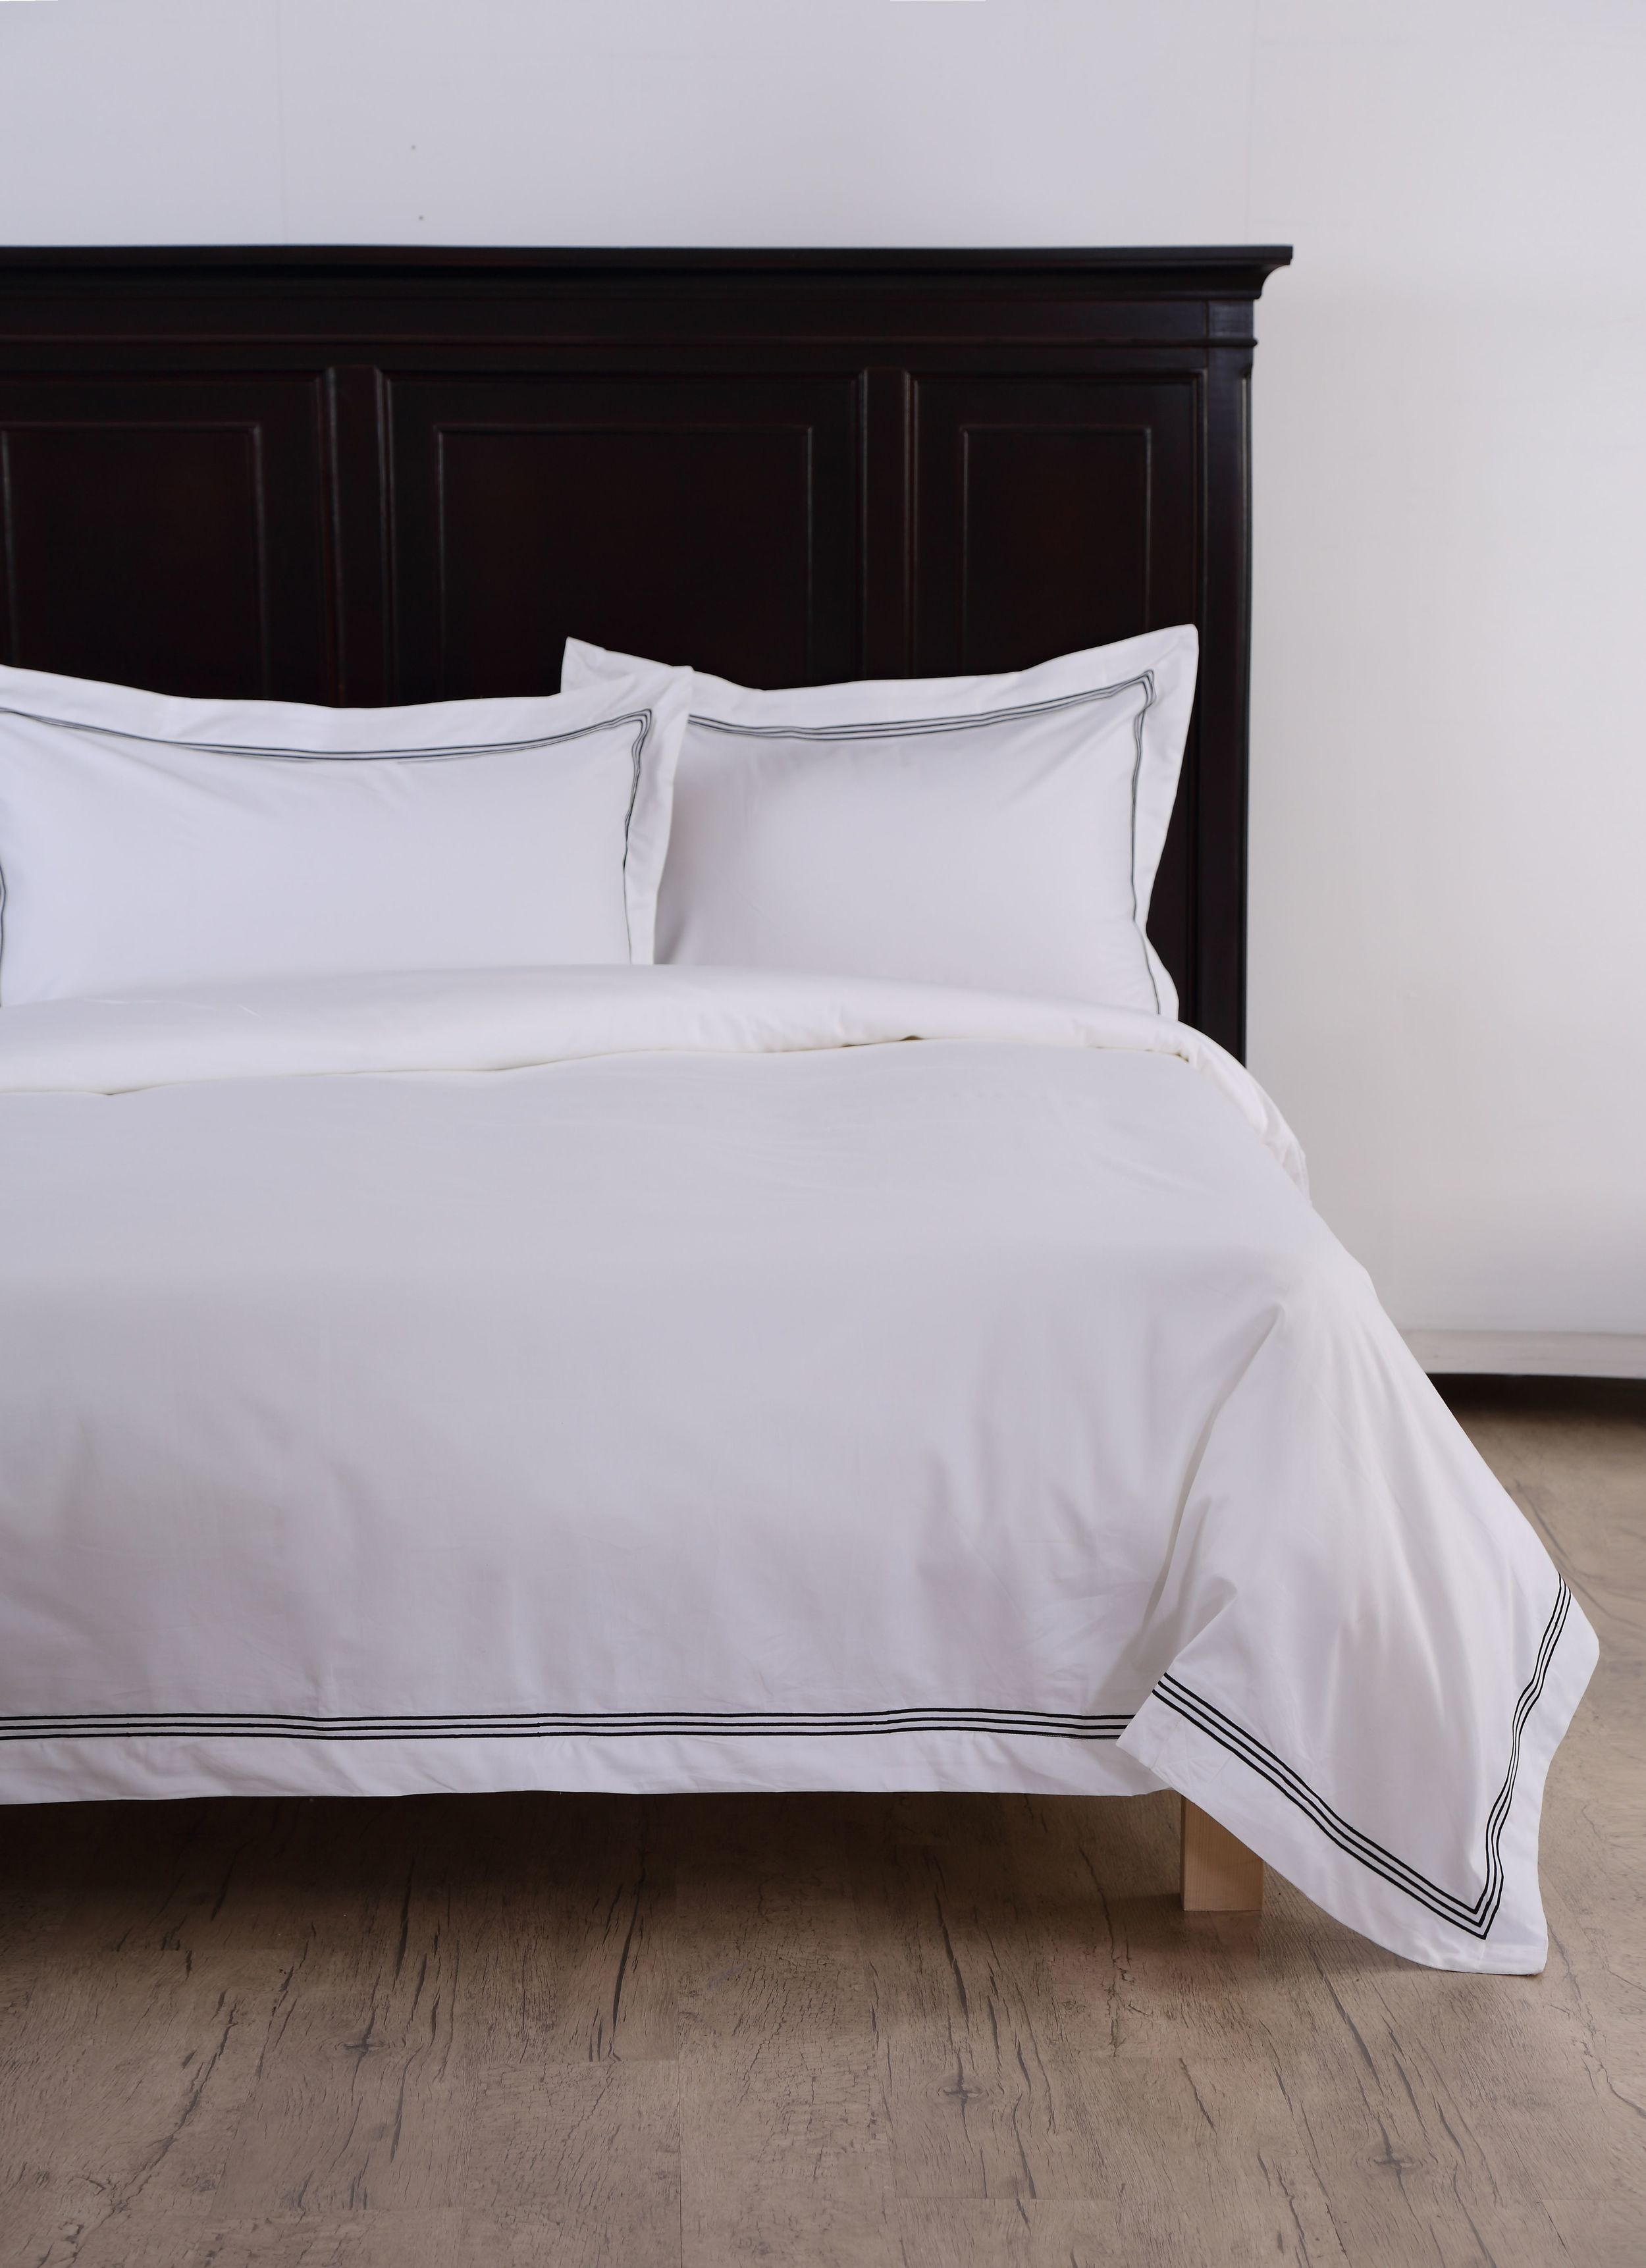 Sleep Naked Black Corded luxury bed linen set_HK$2145 for king size.jpg